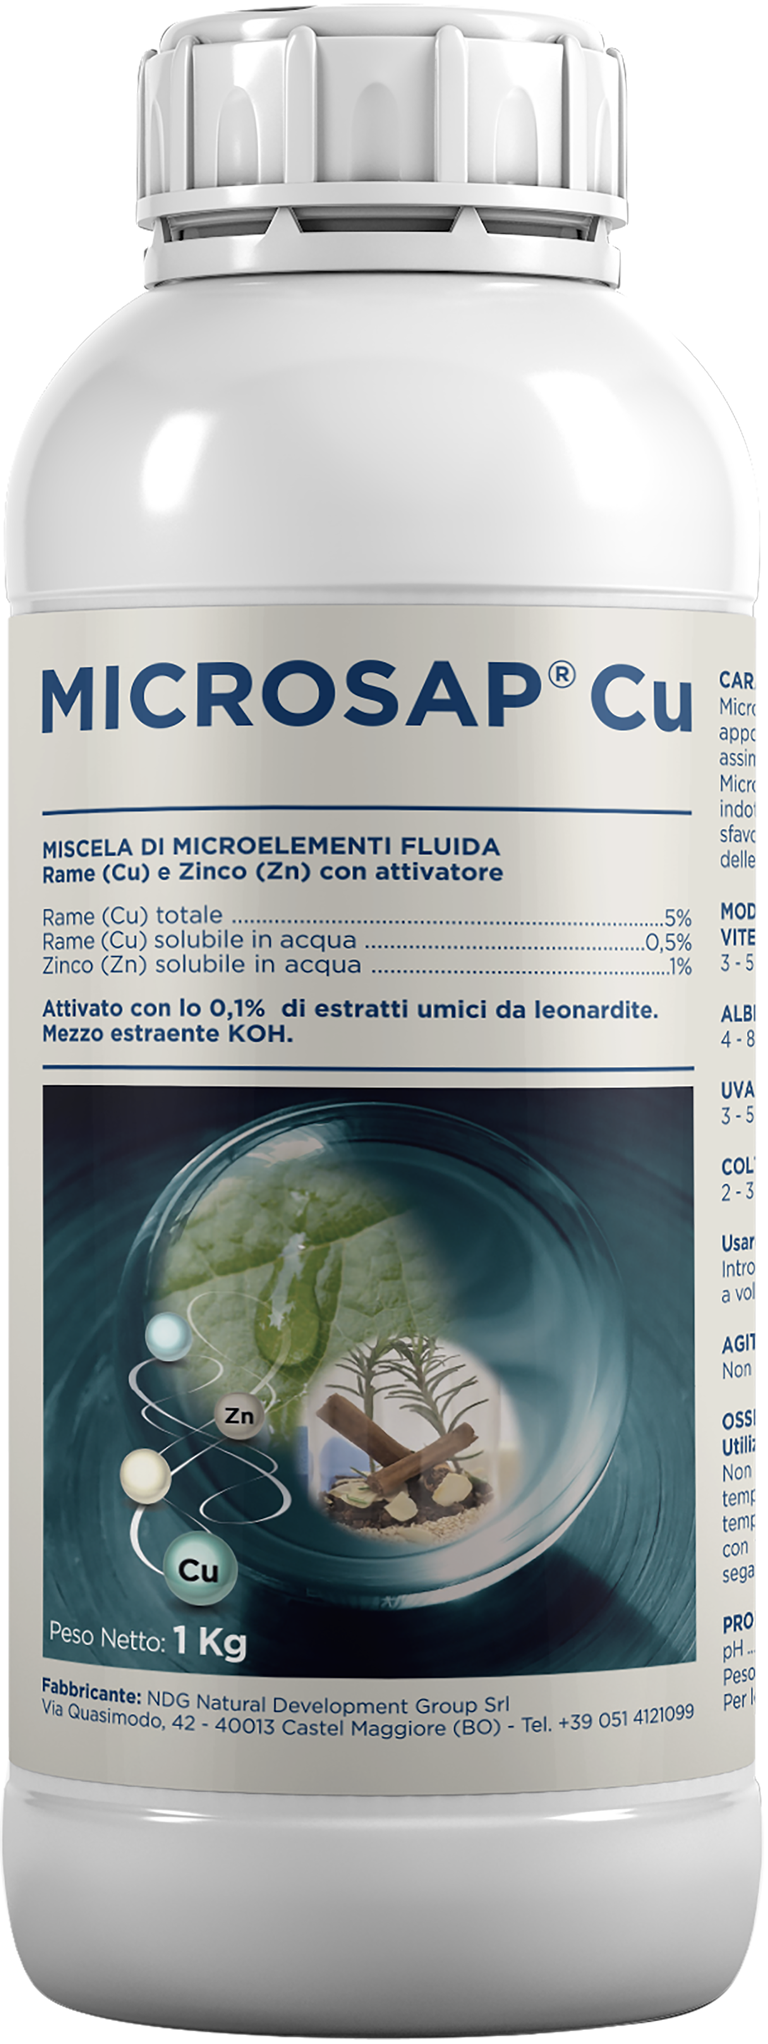 home_Microsap-Cu-kg1